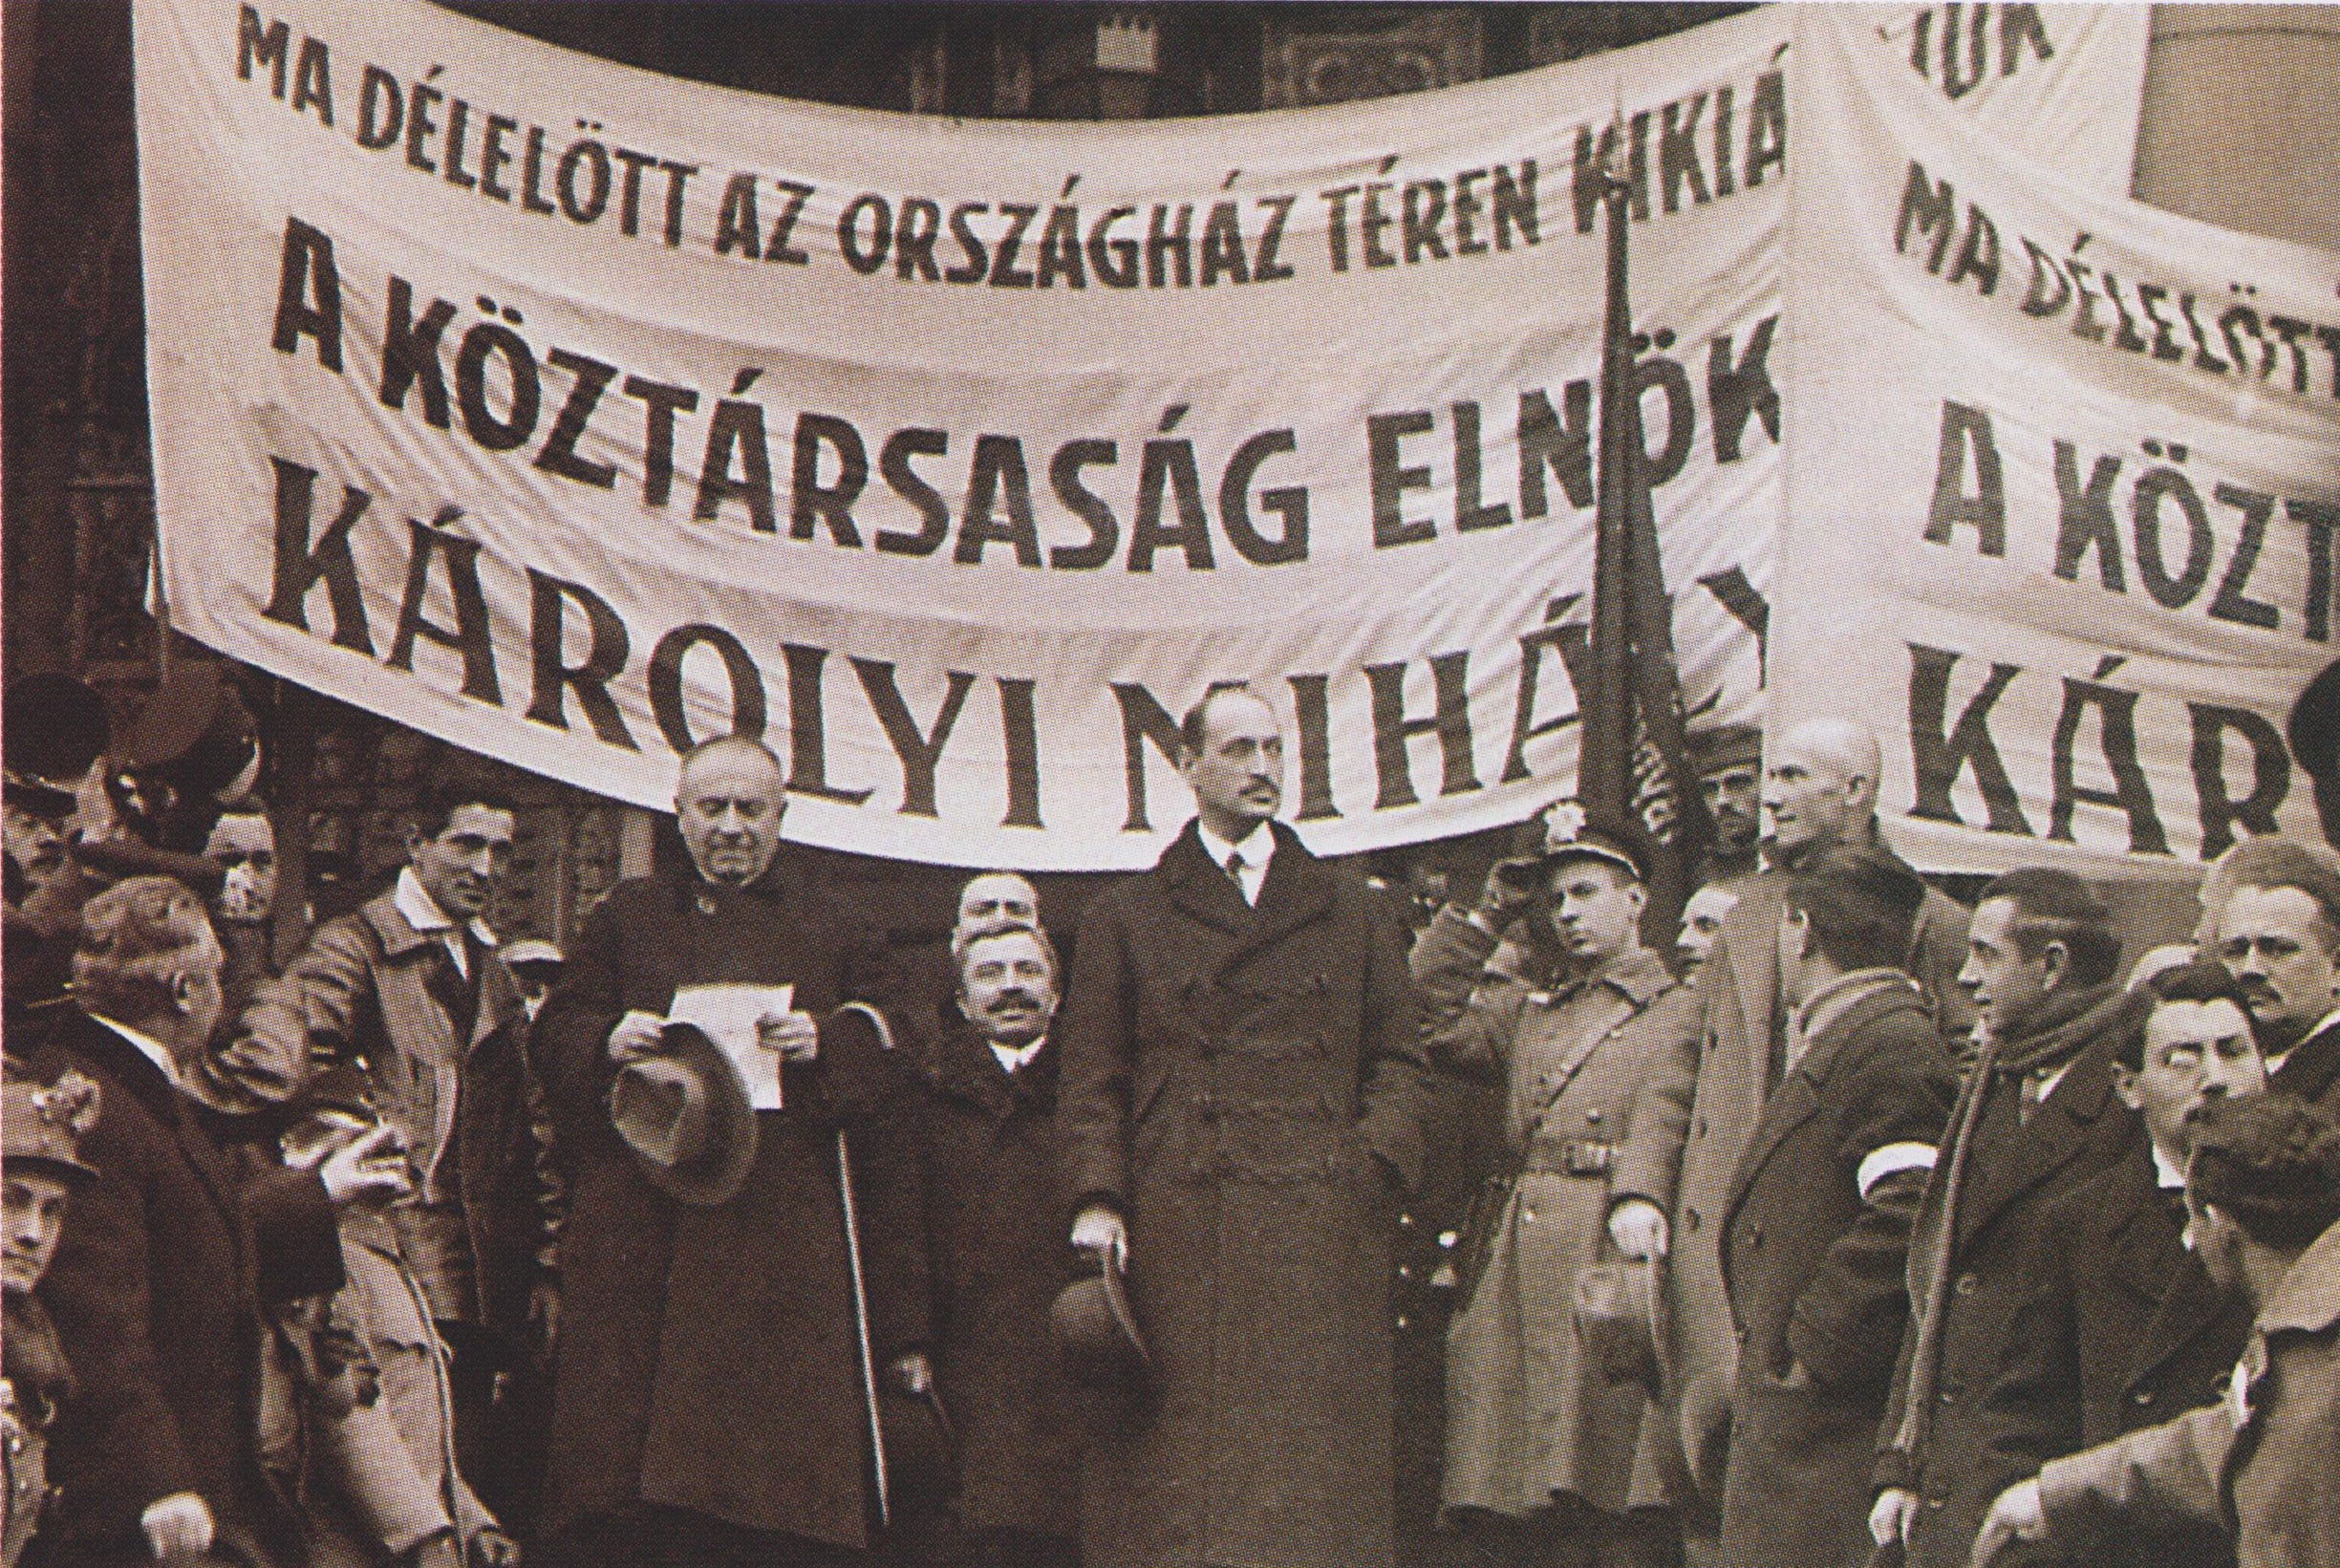 Міхай Каройі проголошує Венгенську республіку 1918 року